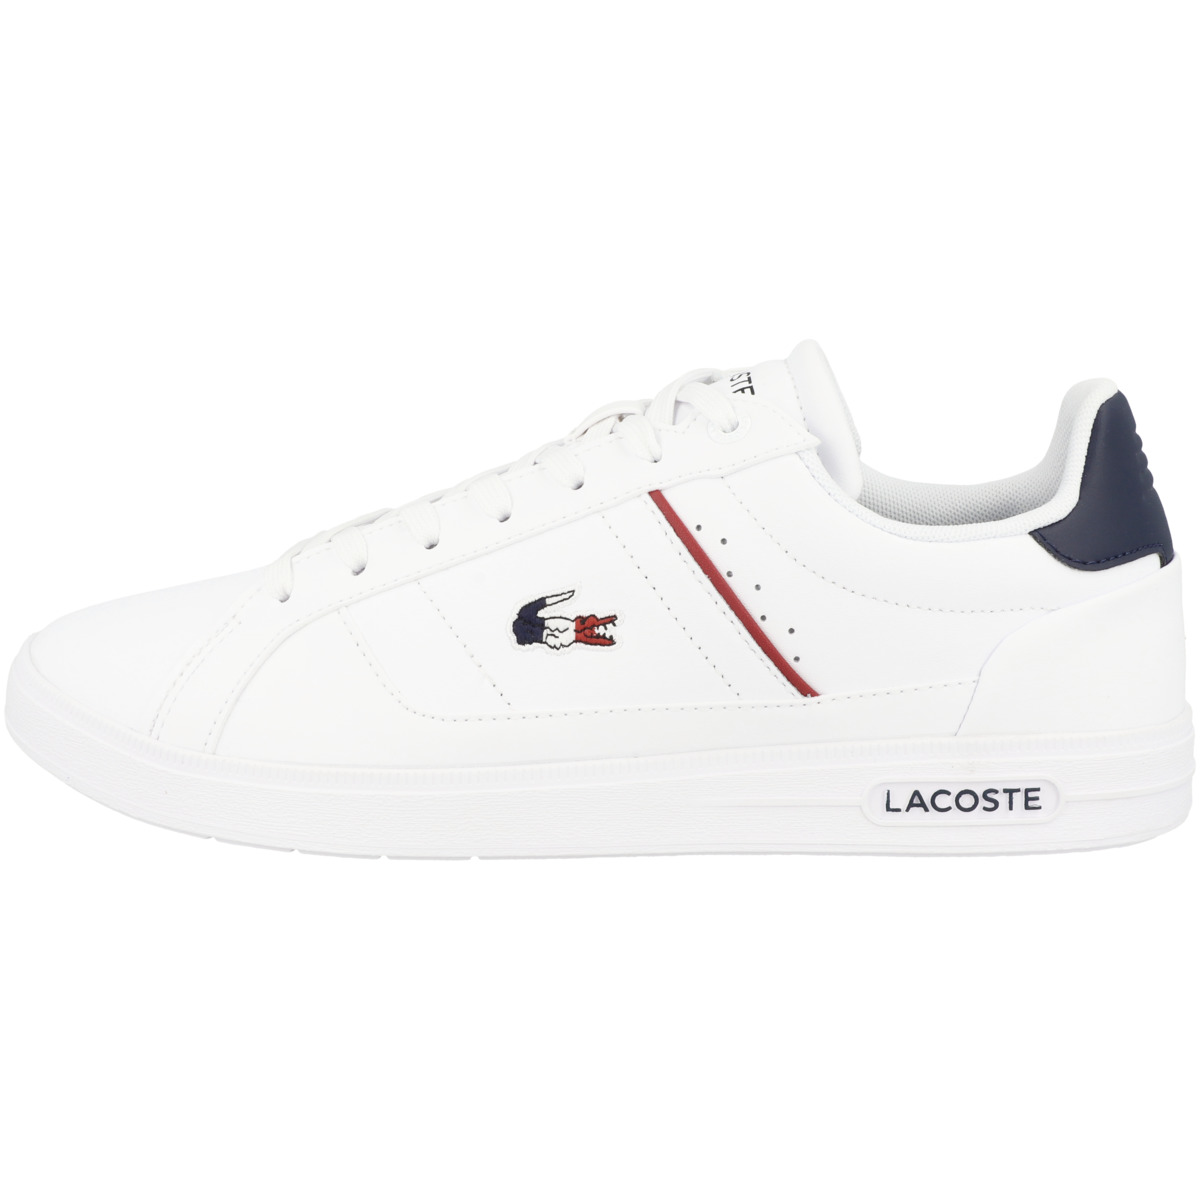 Низкие кроссовки Lacoste low Europa Pro Tri 123 1 SMA, белый кроссовки lacoste europa pro black red